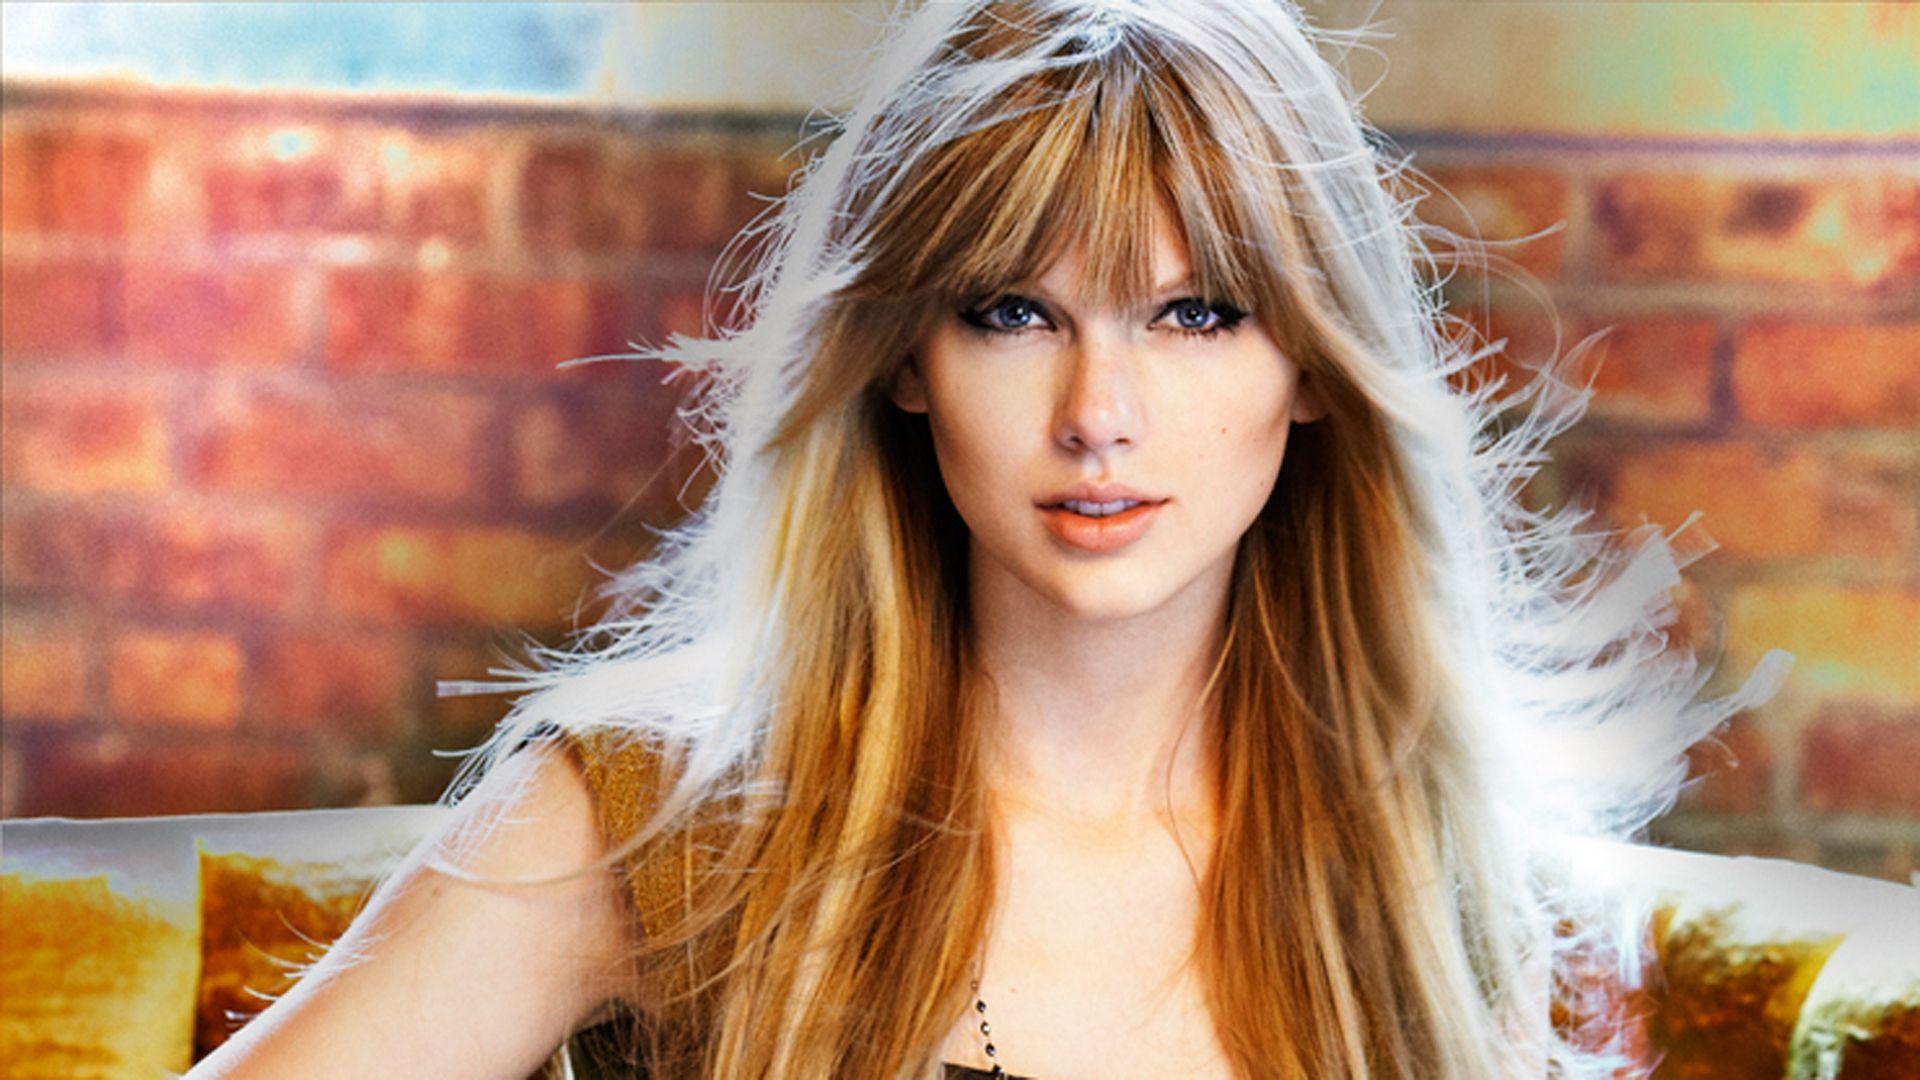 Taylor Swift Desktop Wallpaper. Taylor swift, Taylor swift